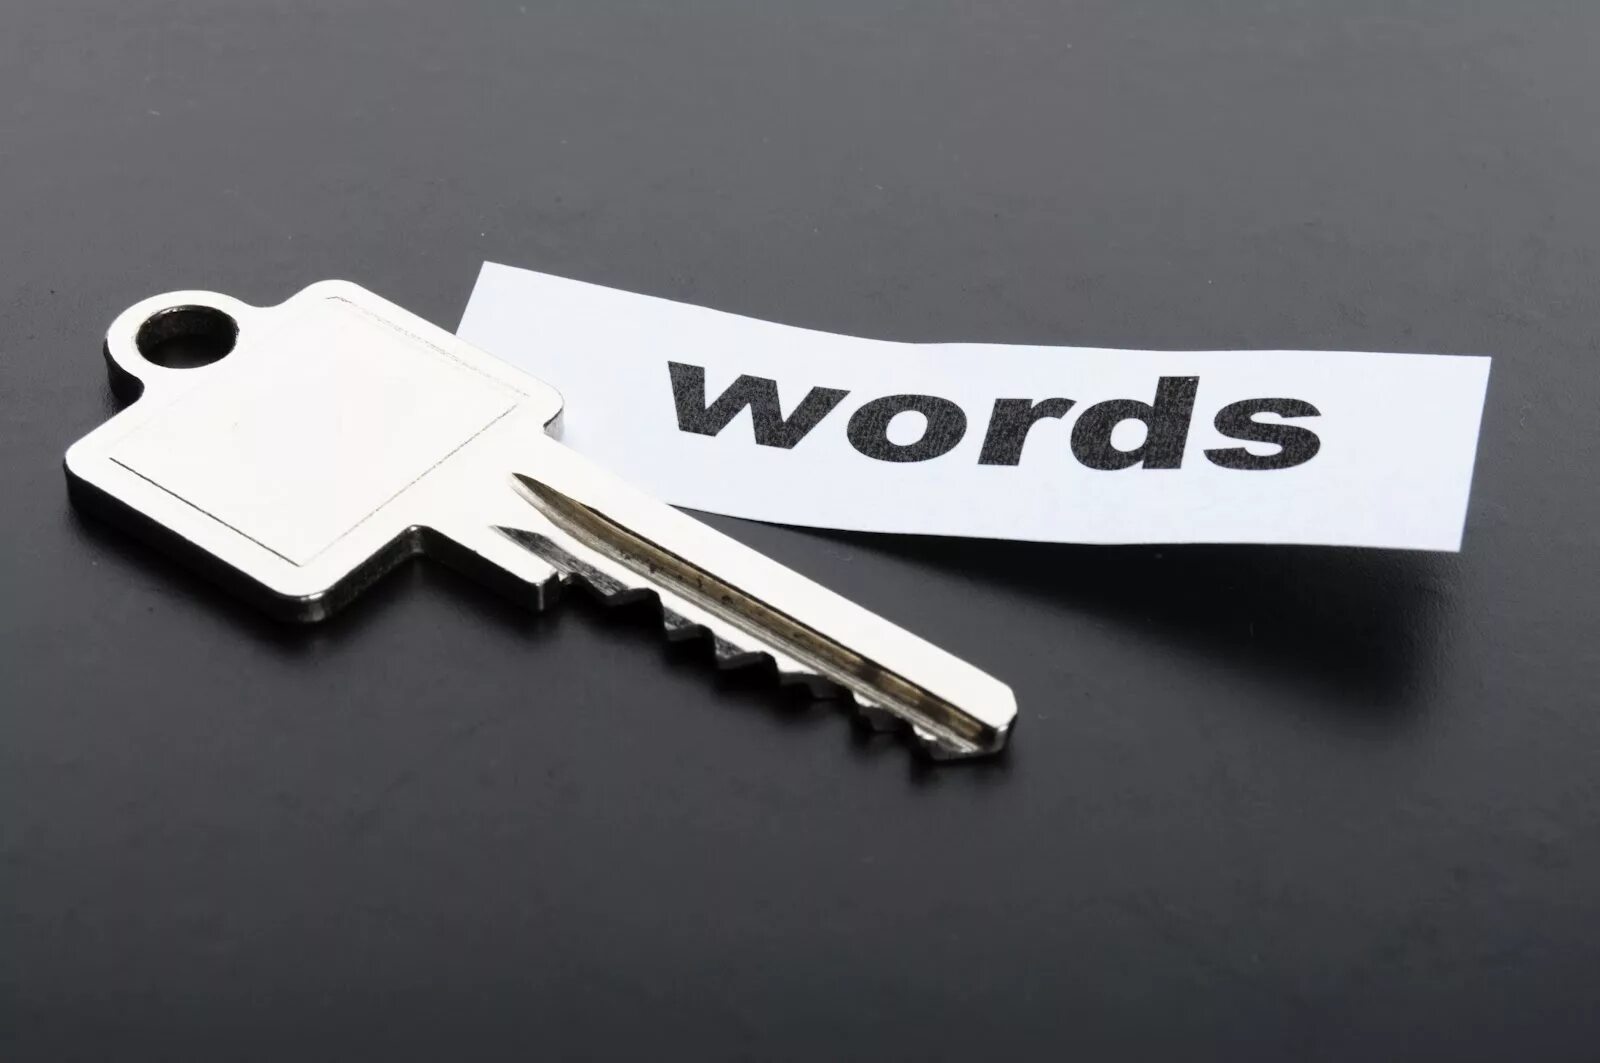 Картинки keywords. SEO keywords. Key Words фото. SEO для сумки ключевики. Keywords key